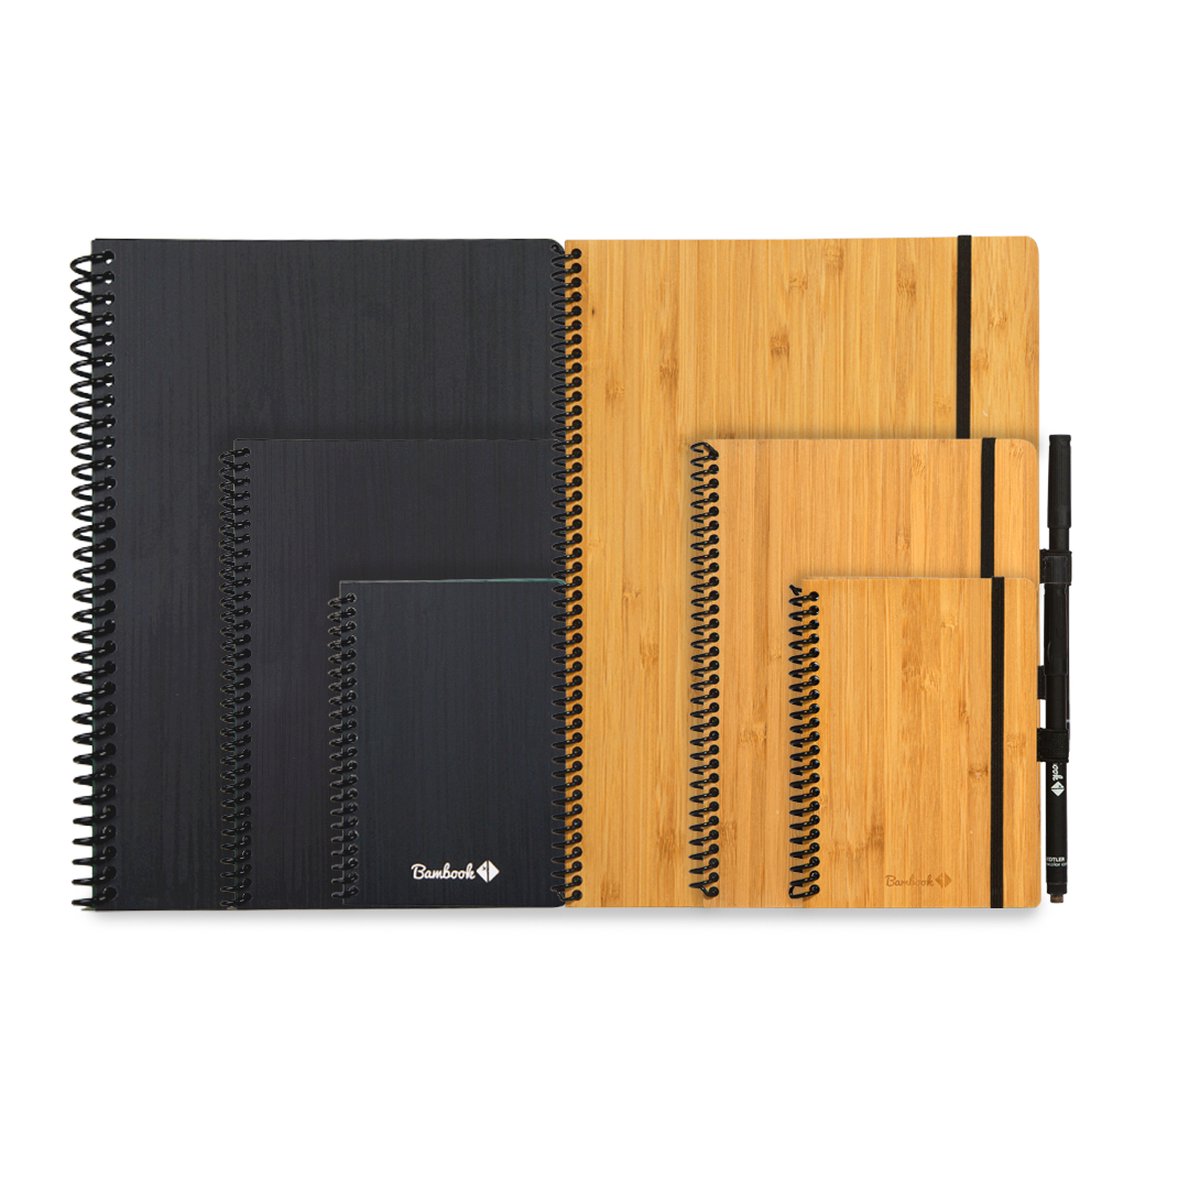 Bambook Hardcover löschbares Notizbuch liniert Verschiedene Größen